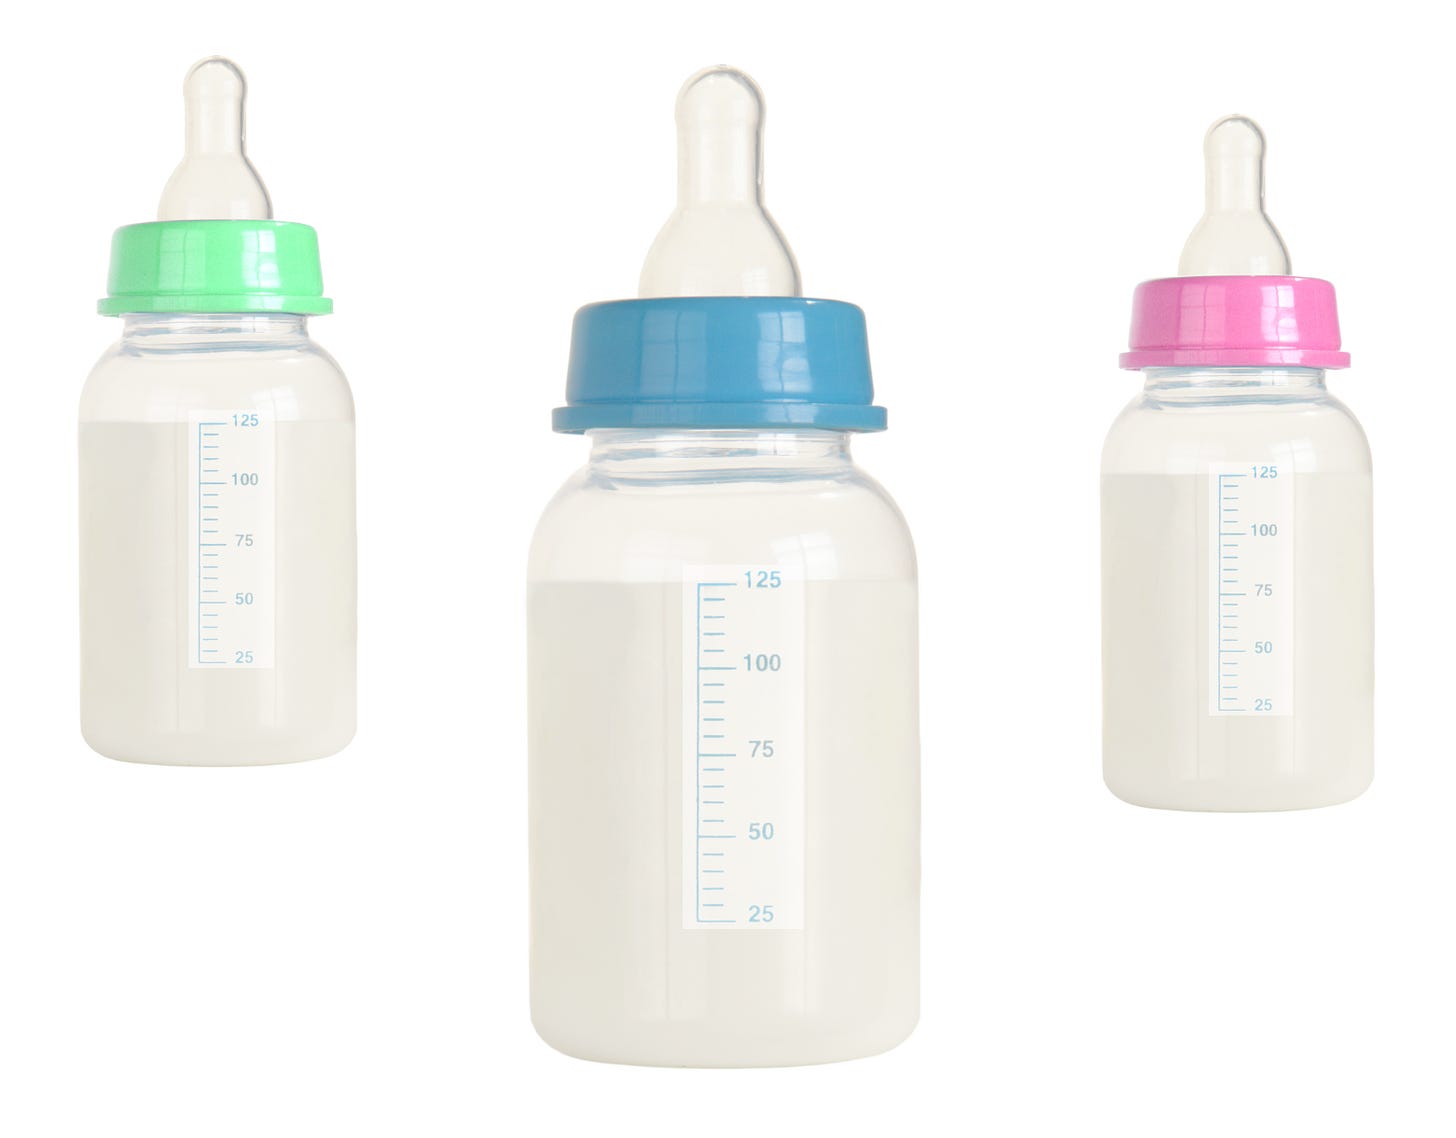 3 baby bottles full of formula